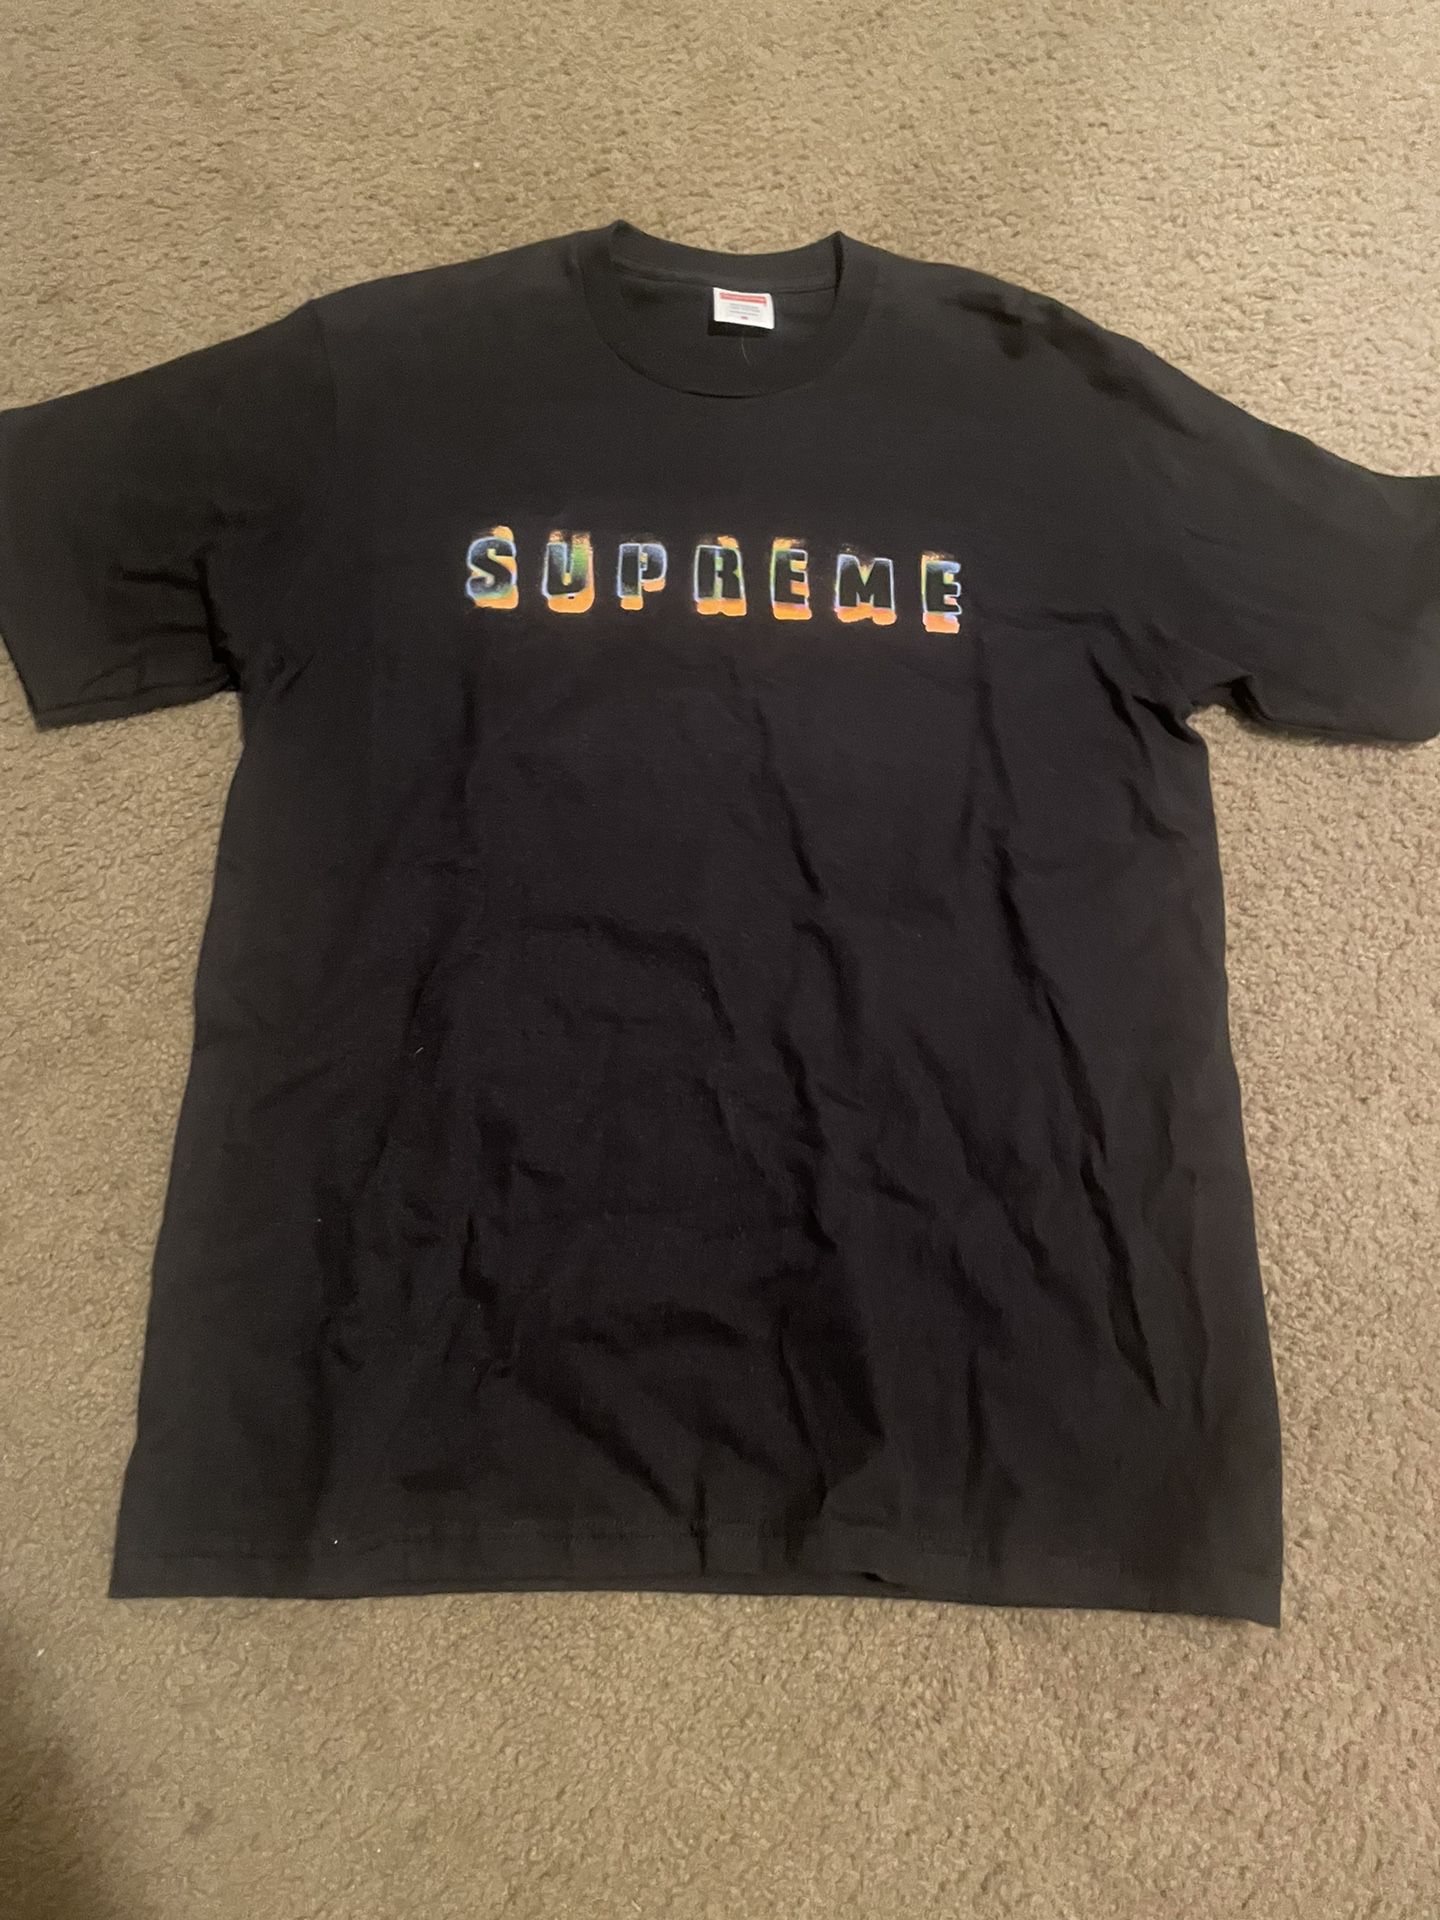 black supreme tee shirt